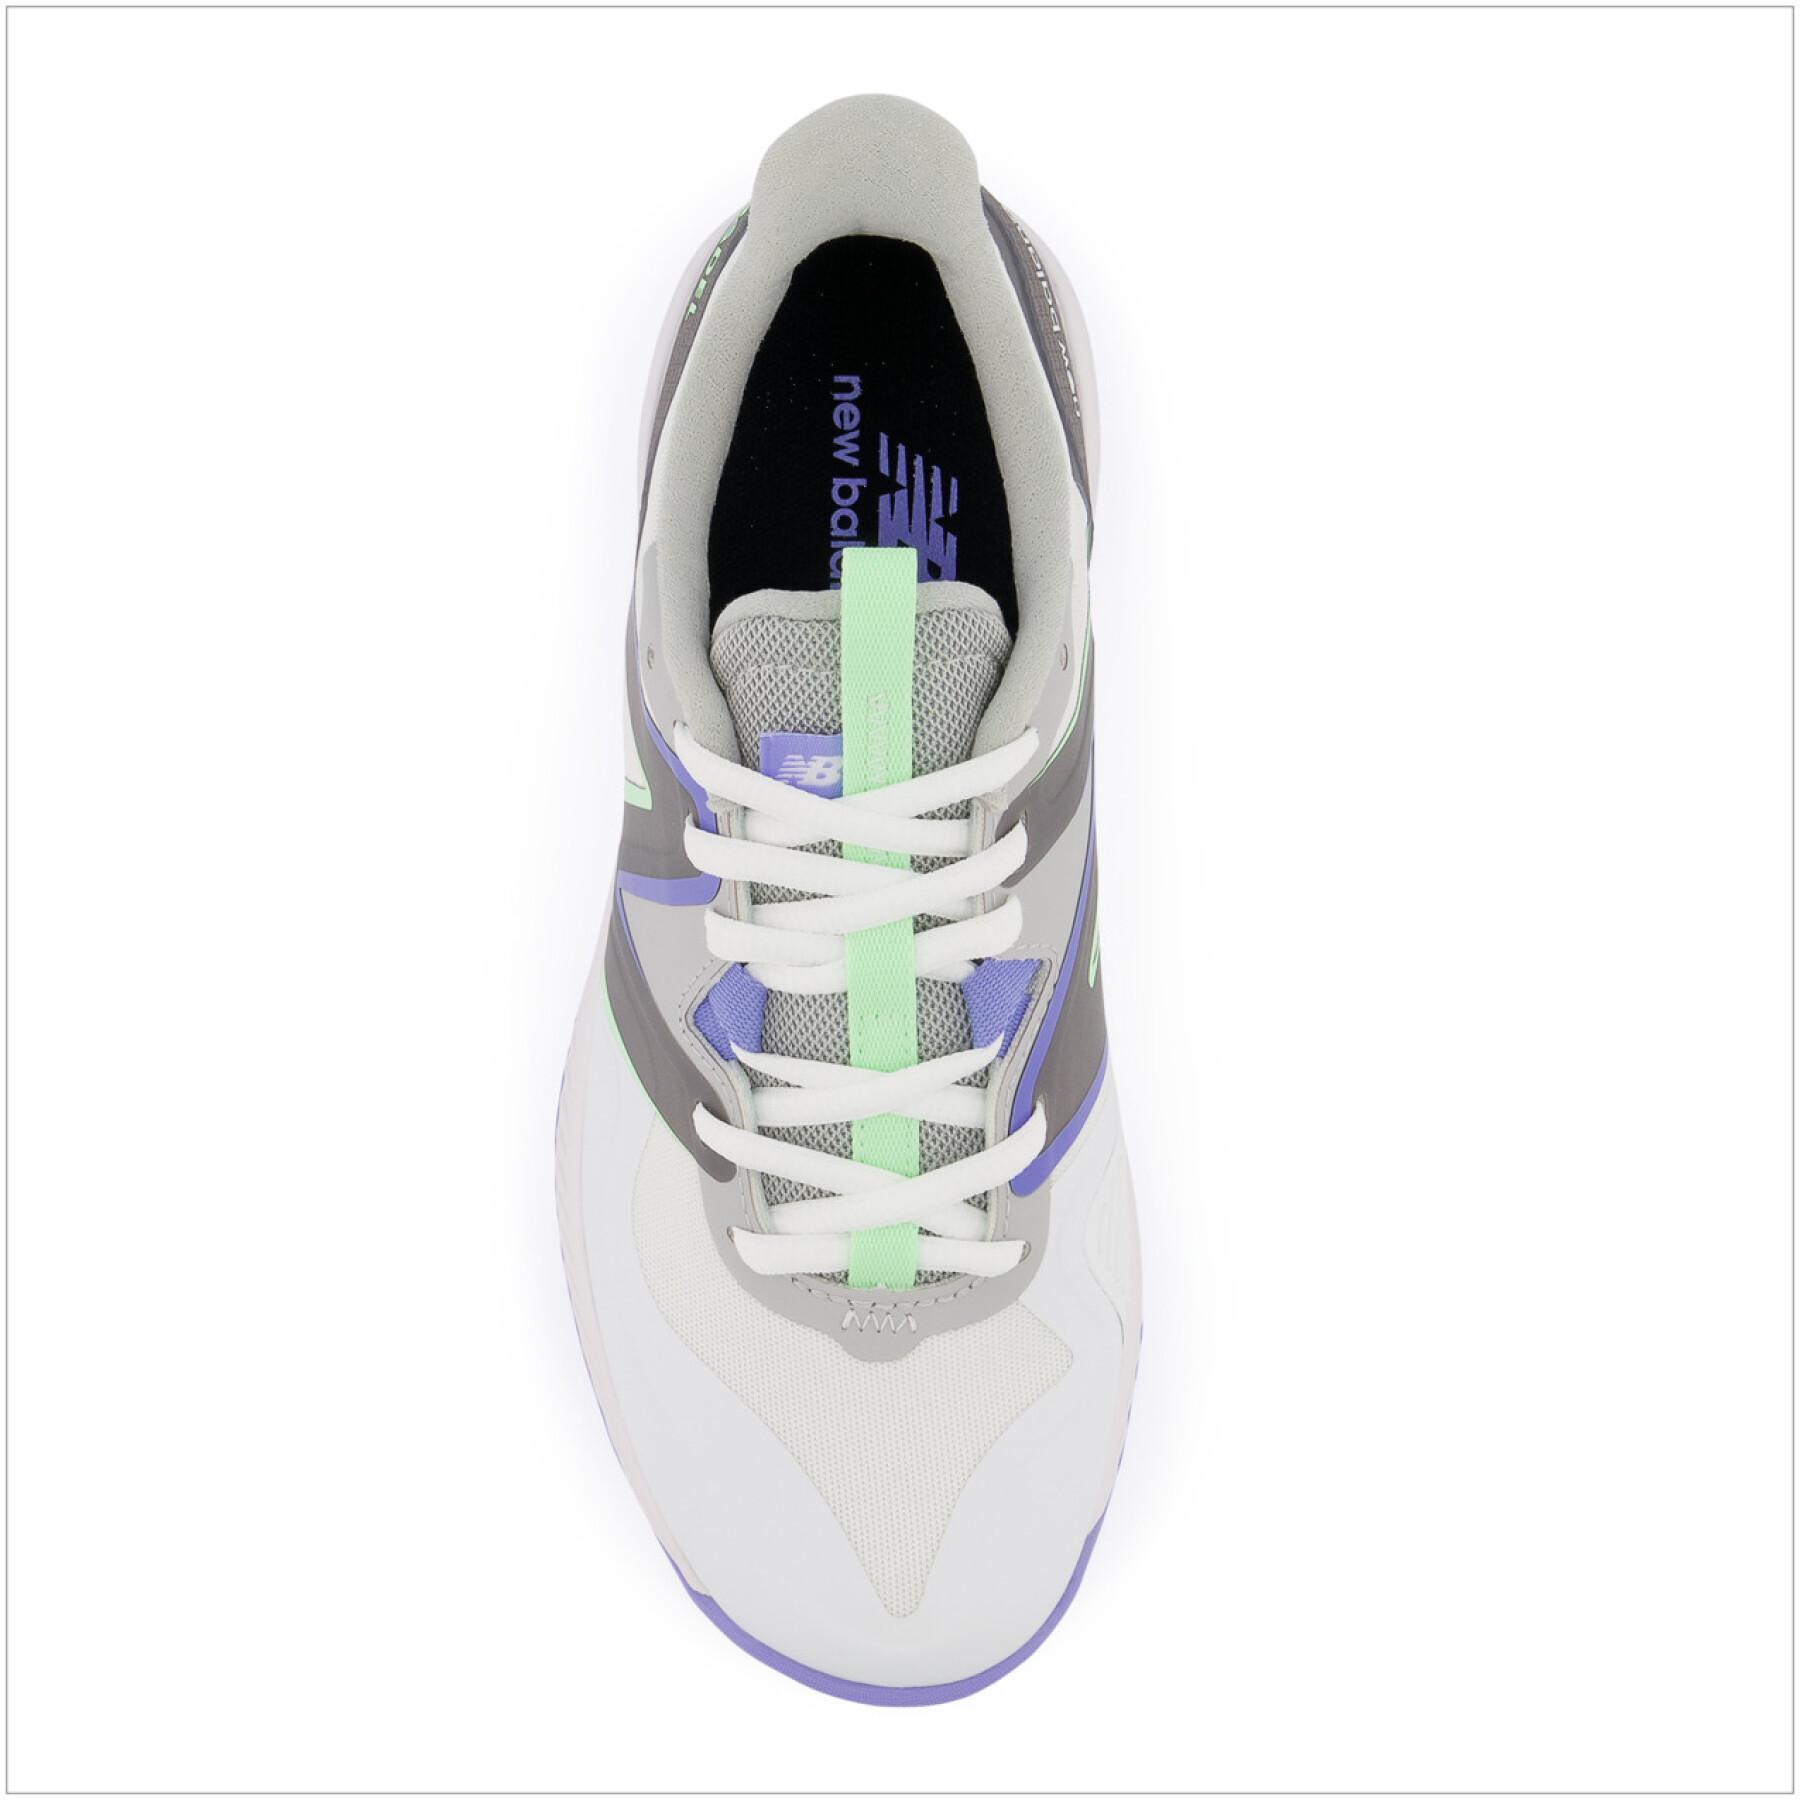 Damskie buty do tenisa New Balance 796v3